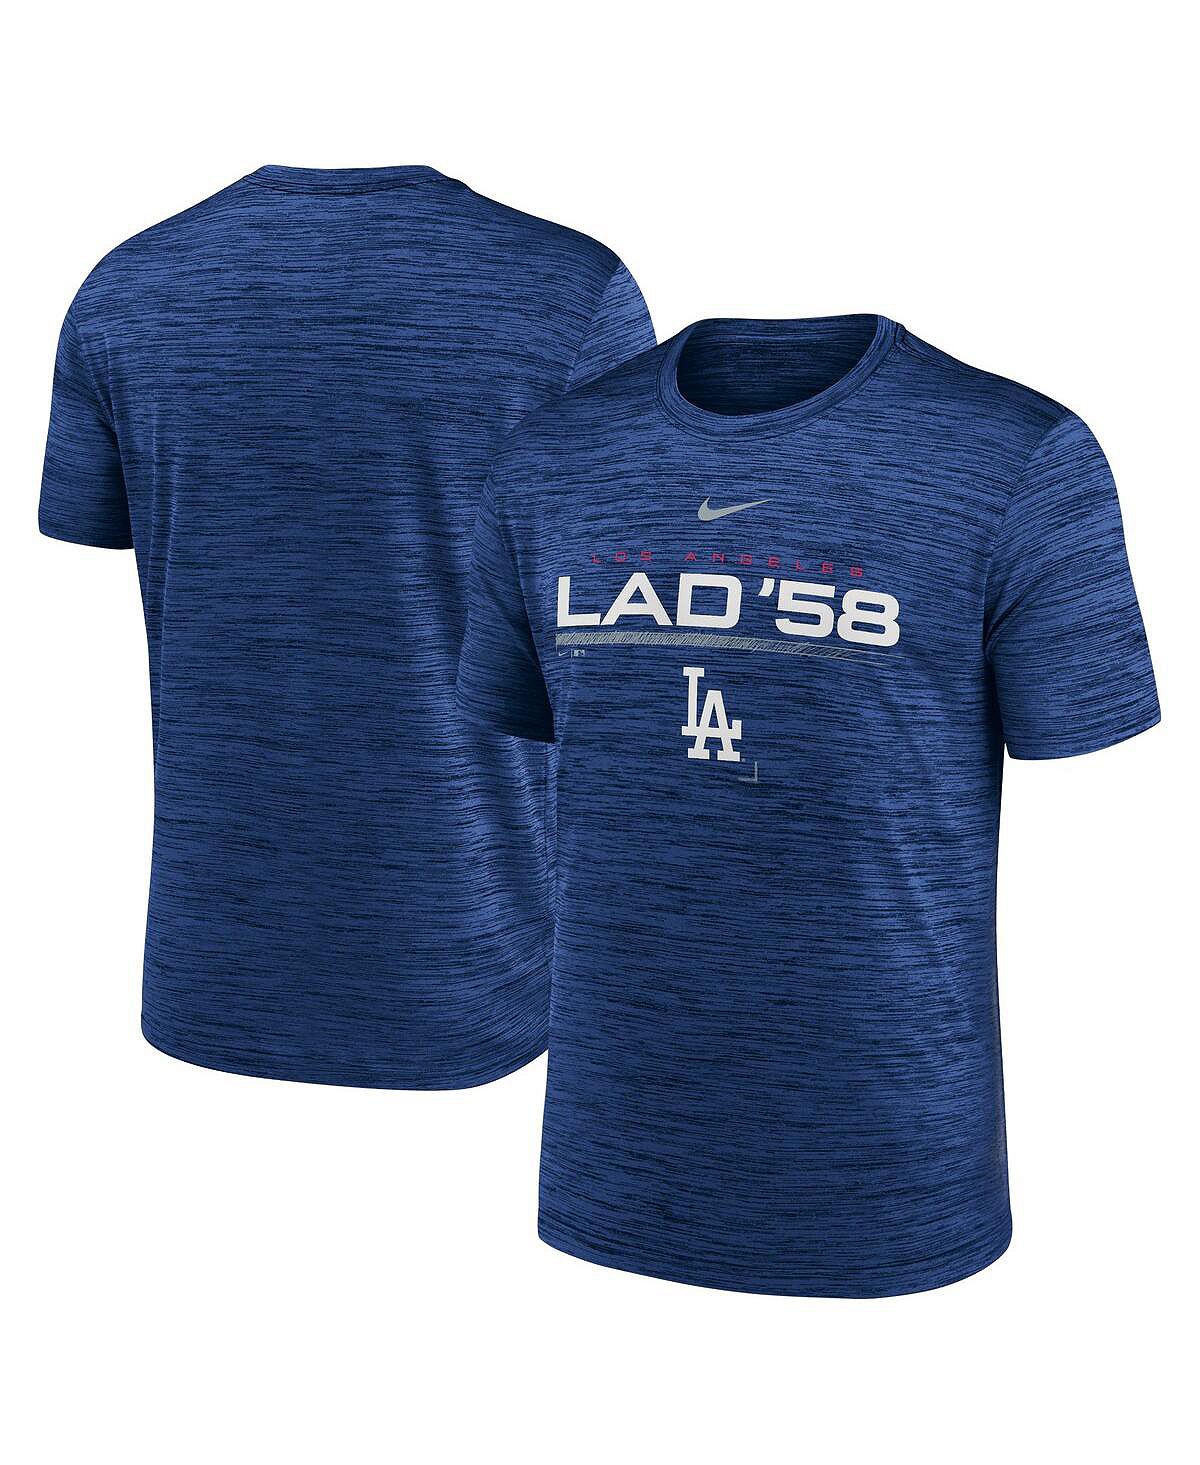 цена Мужская футболка Royal Los Angeles Dodgers с надписью Velocity Performance Nike